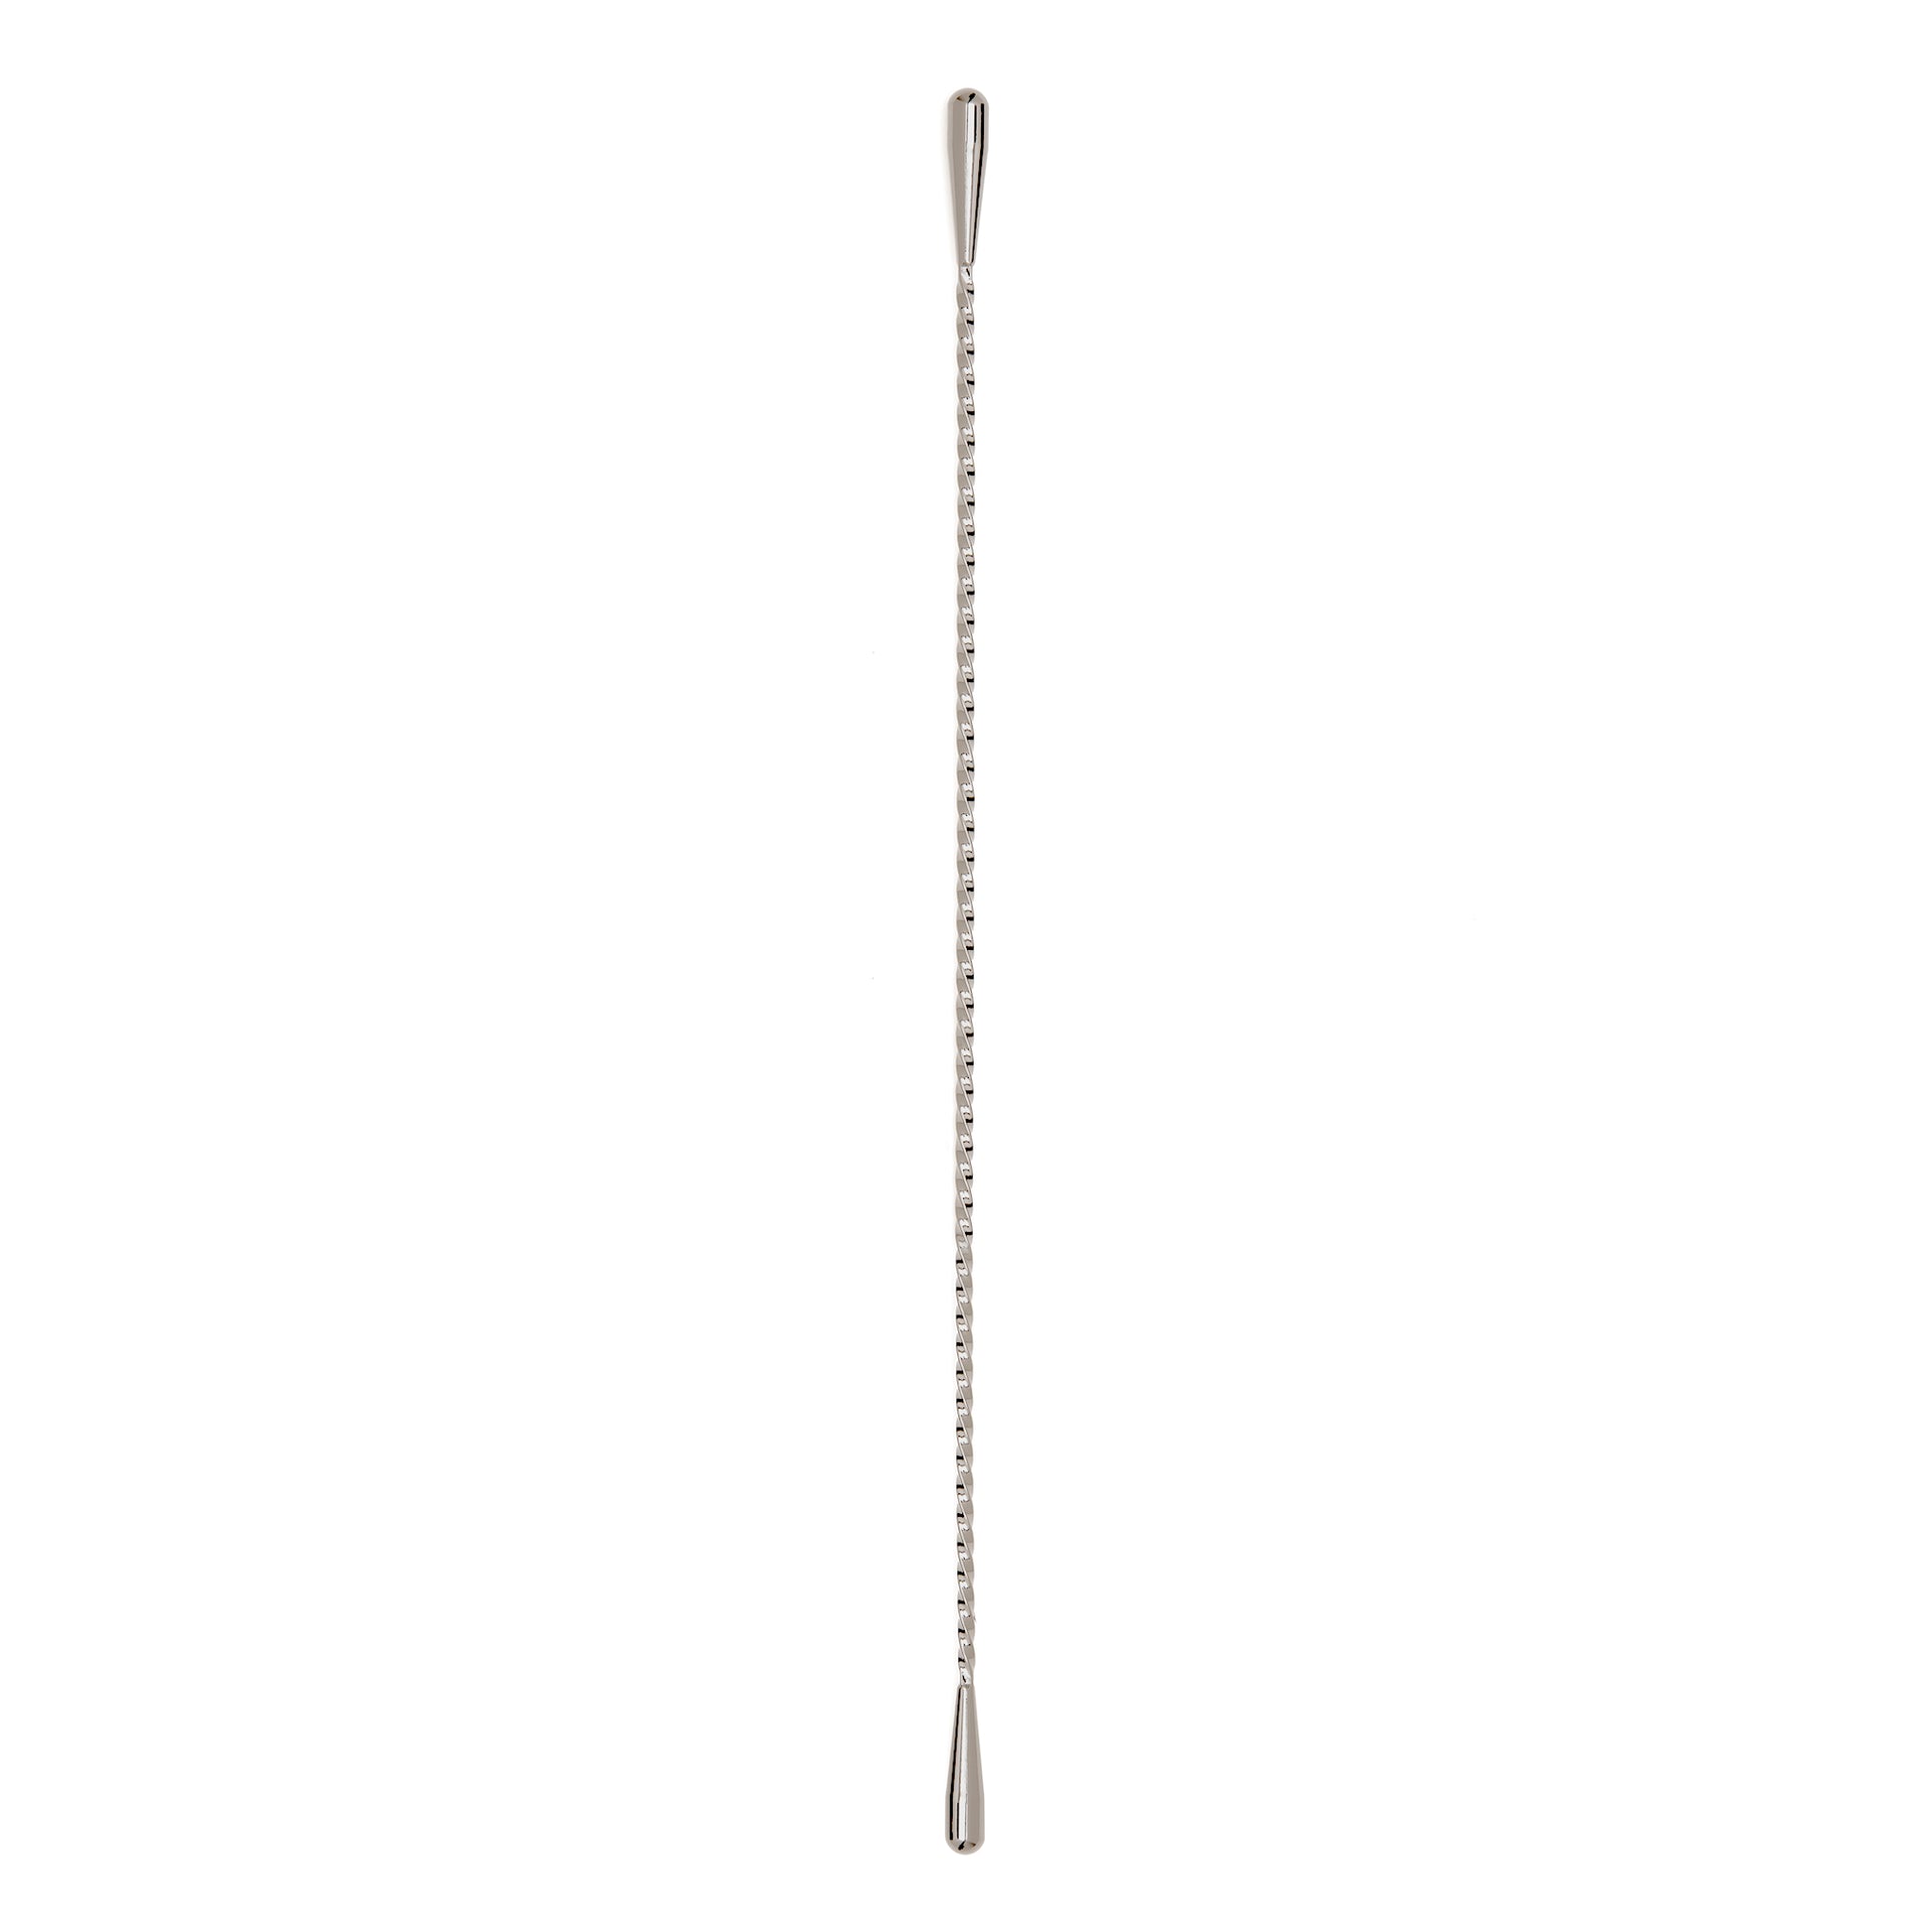 DE SOTO DOUBLE TEARDROP™ STIRRER / STAINLESS STEEL / 43.5cm